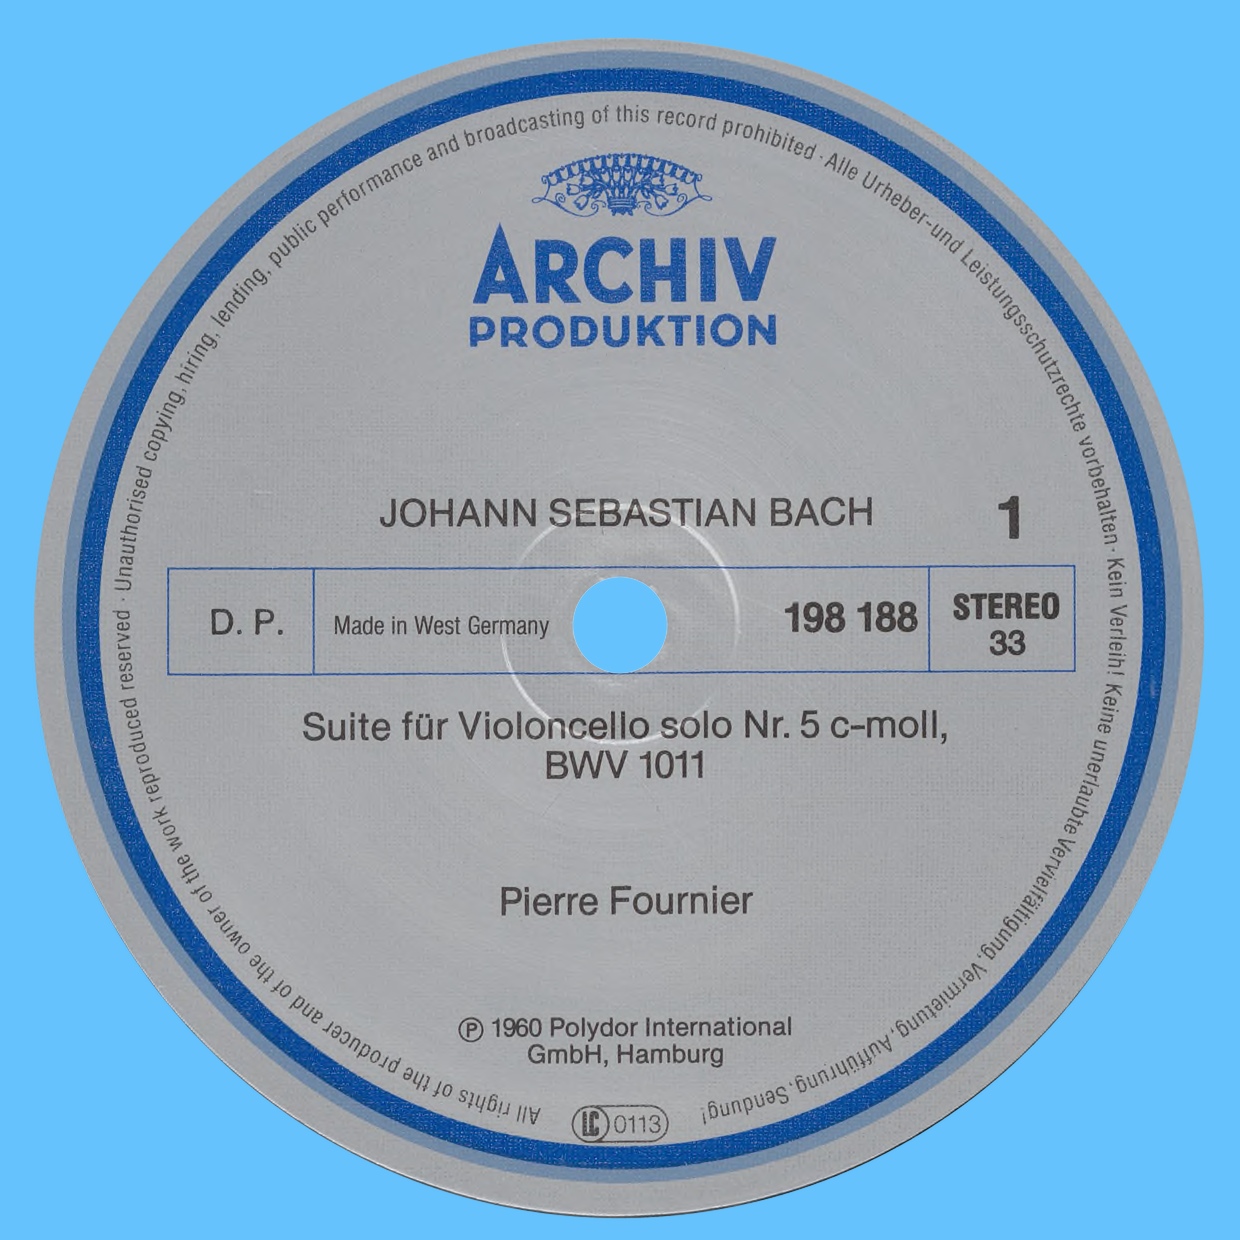 Étiquette recto du disque Archiv Produktion SAPM 198 188 